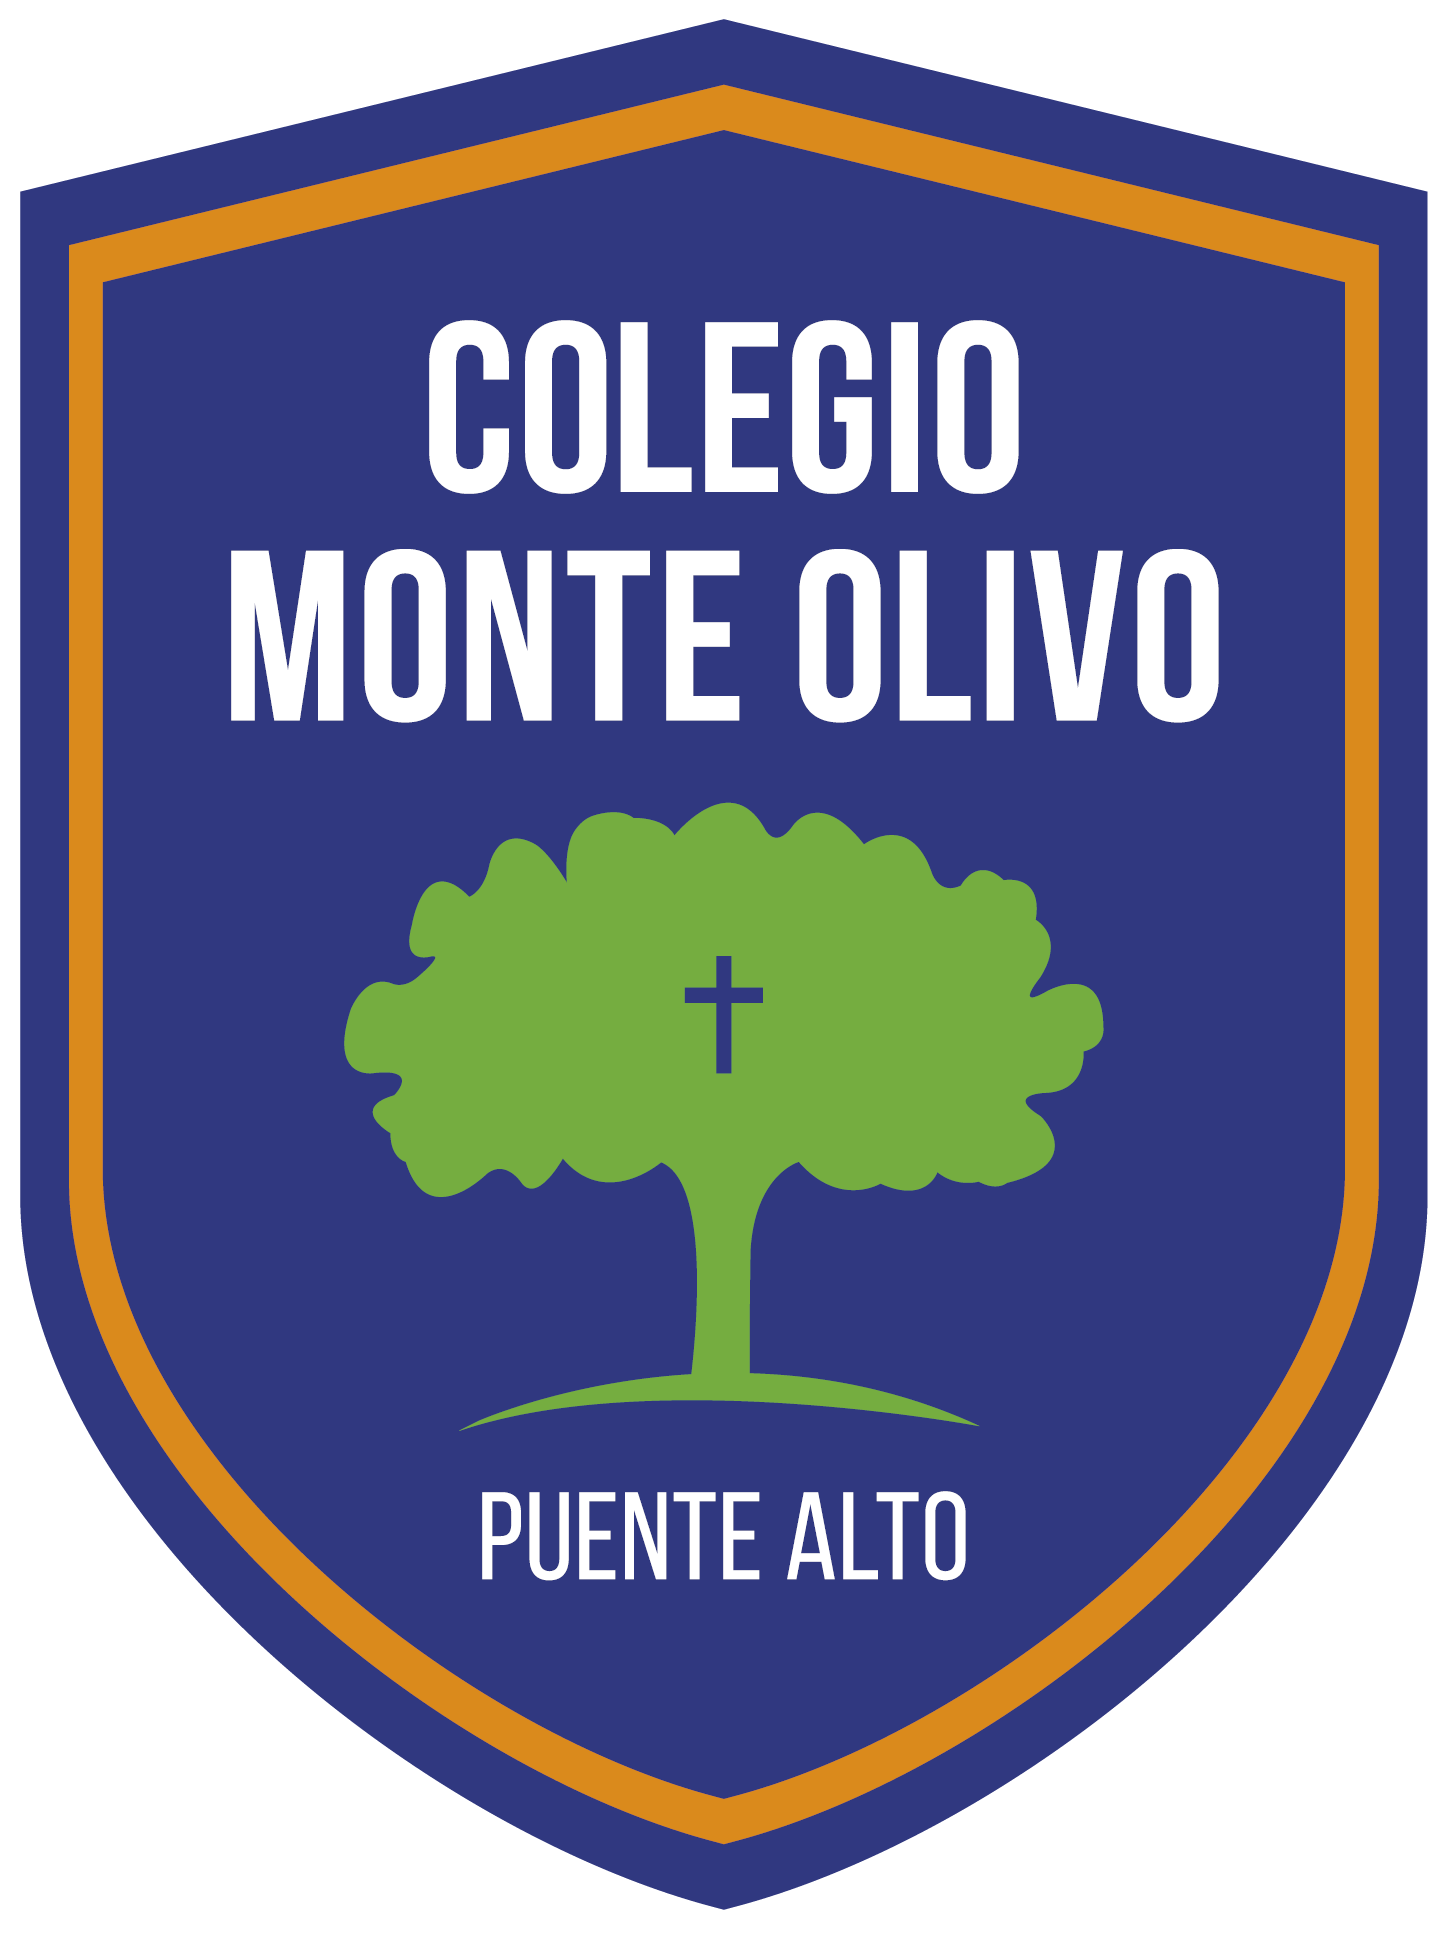 Colegio Monte Olivo